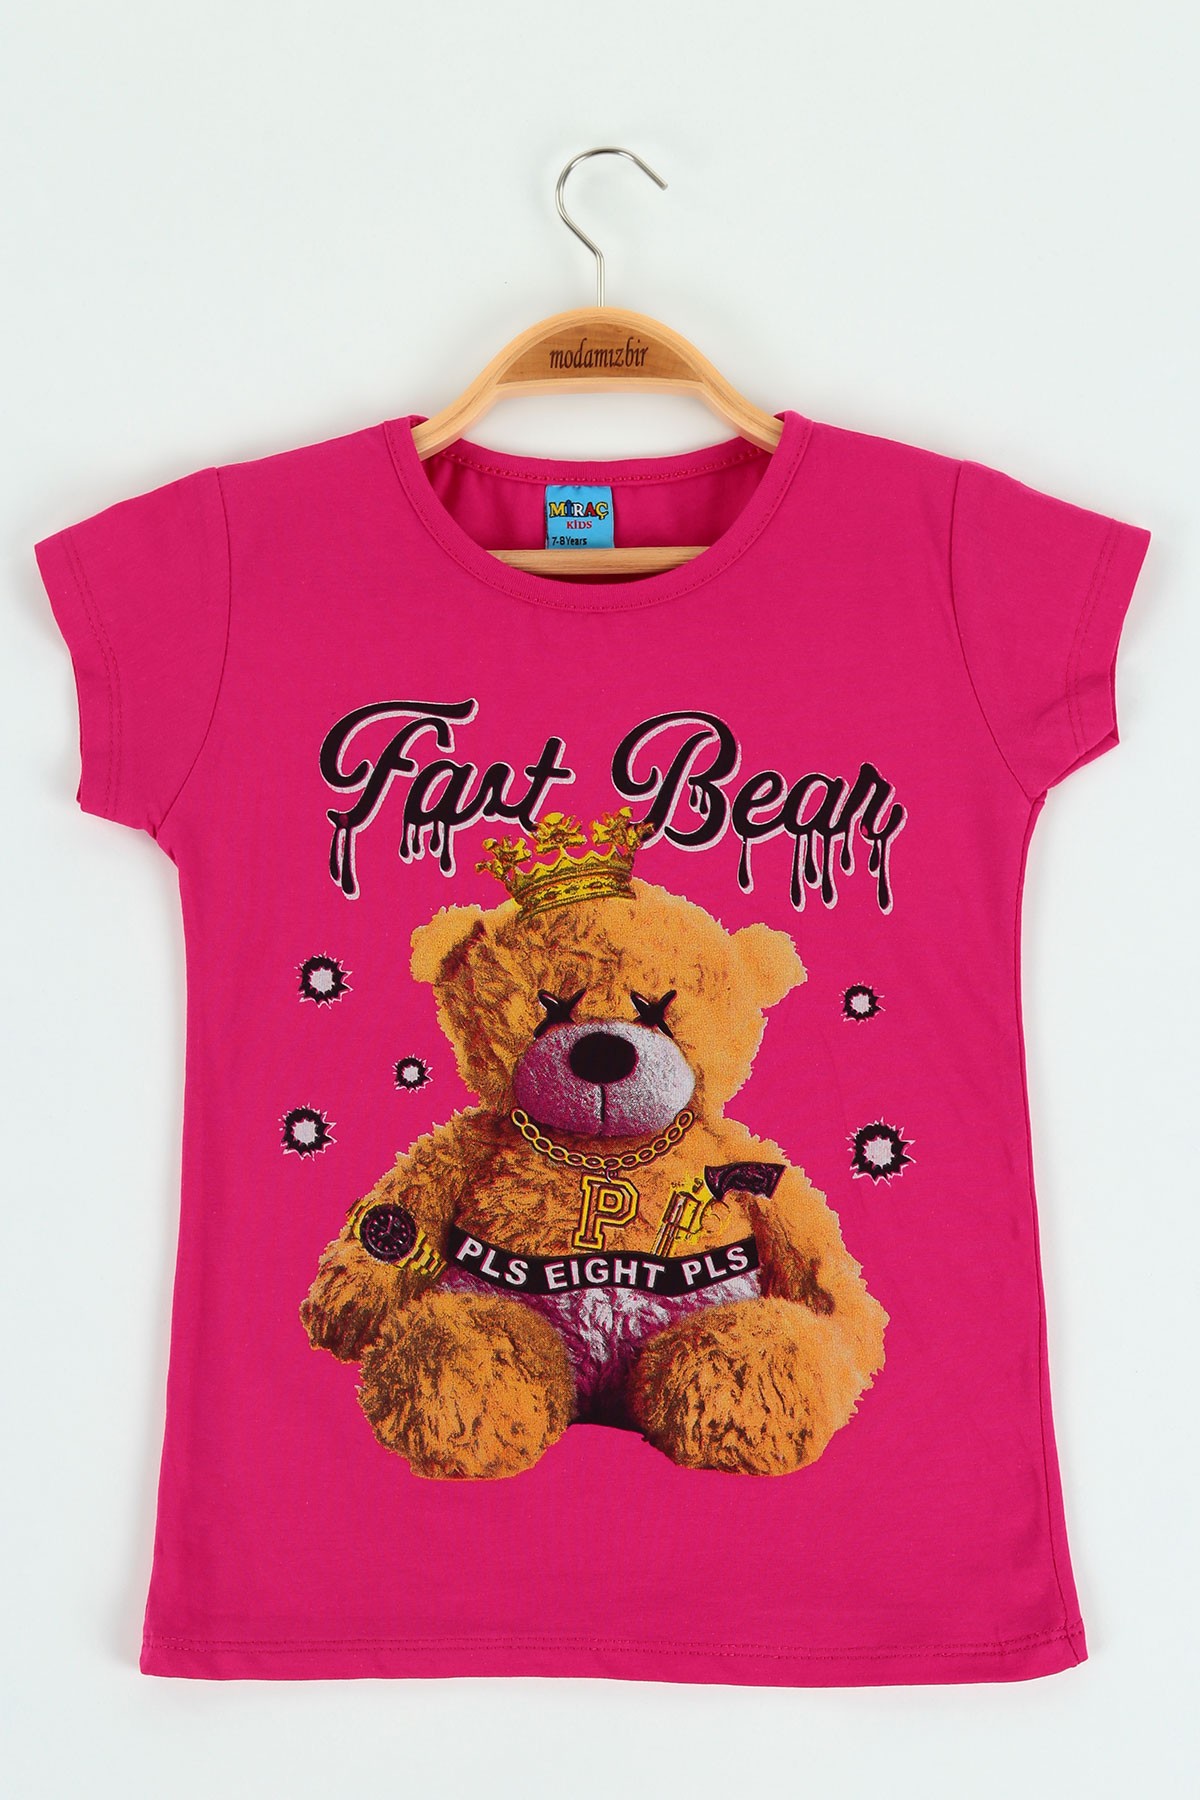 Fuşya (8-12 yaş) Fast Bear Baskılı Kız Çocuk Tişört 121230